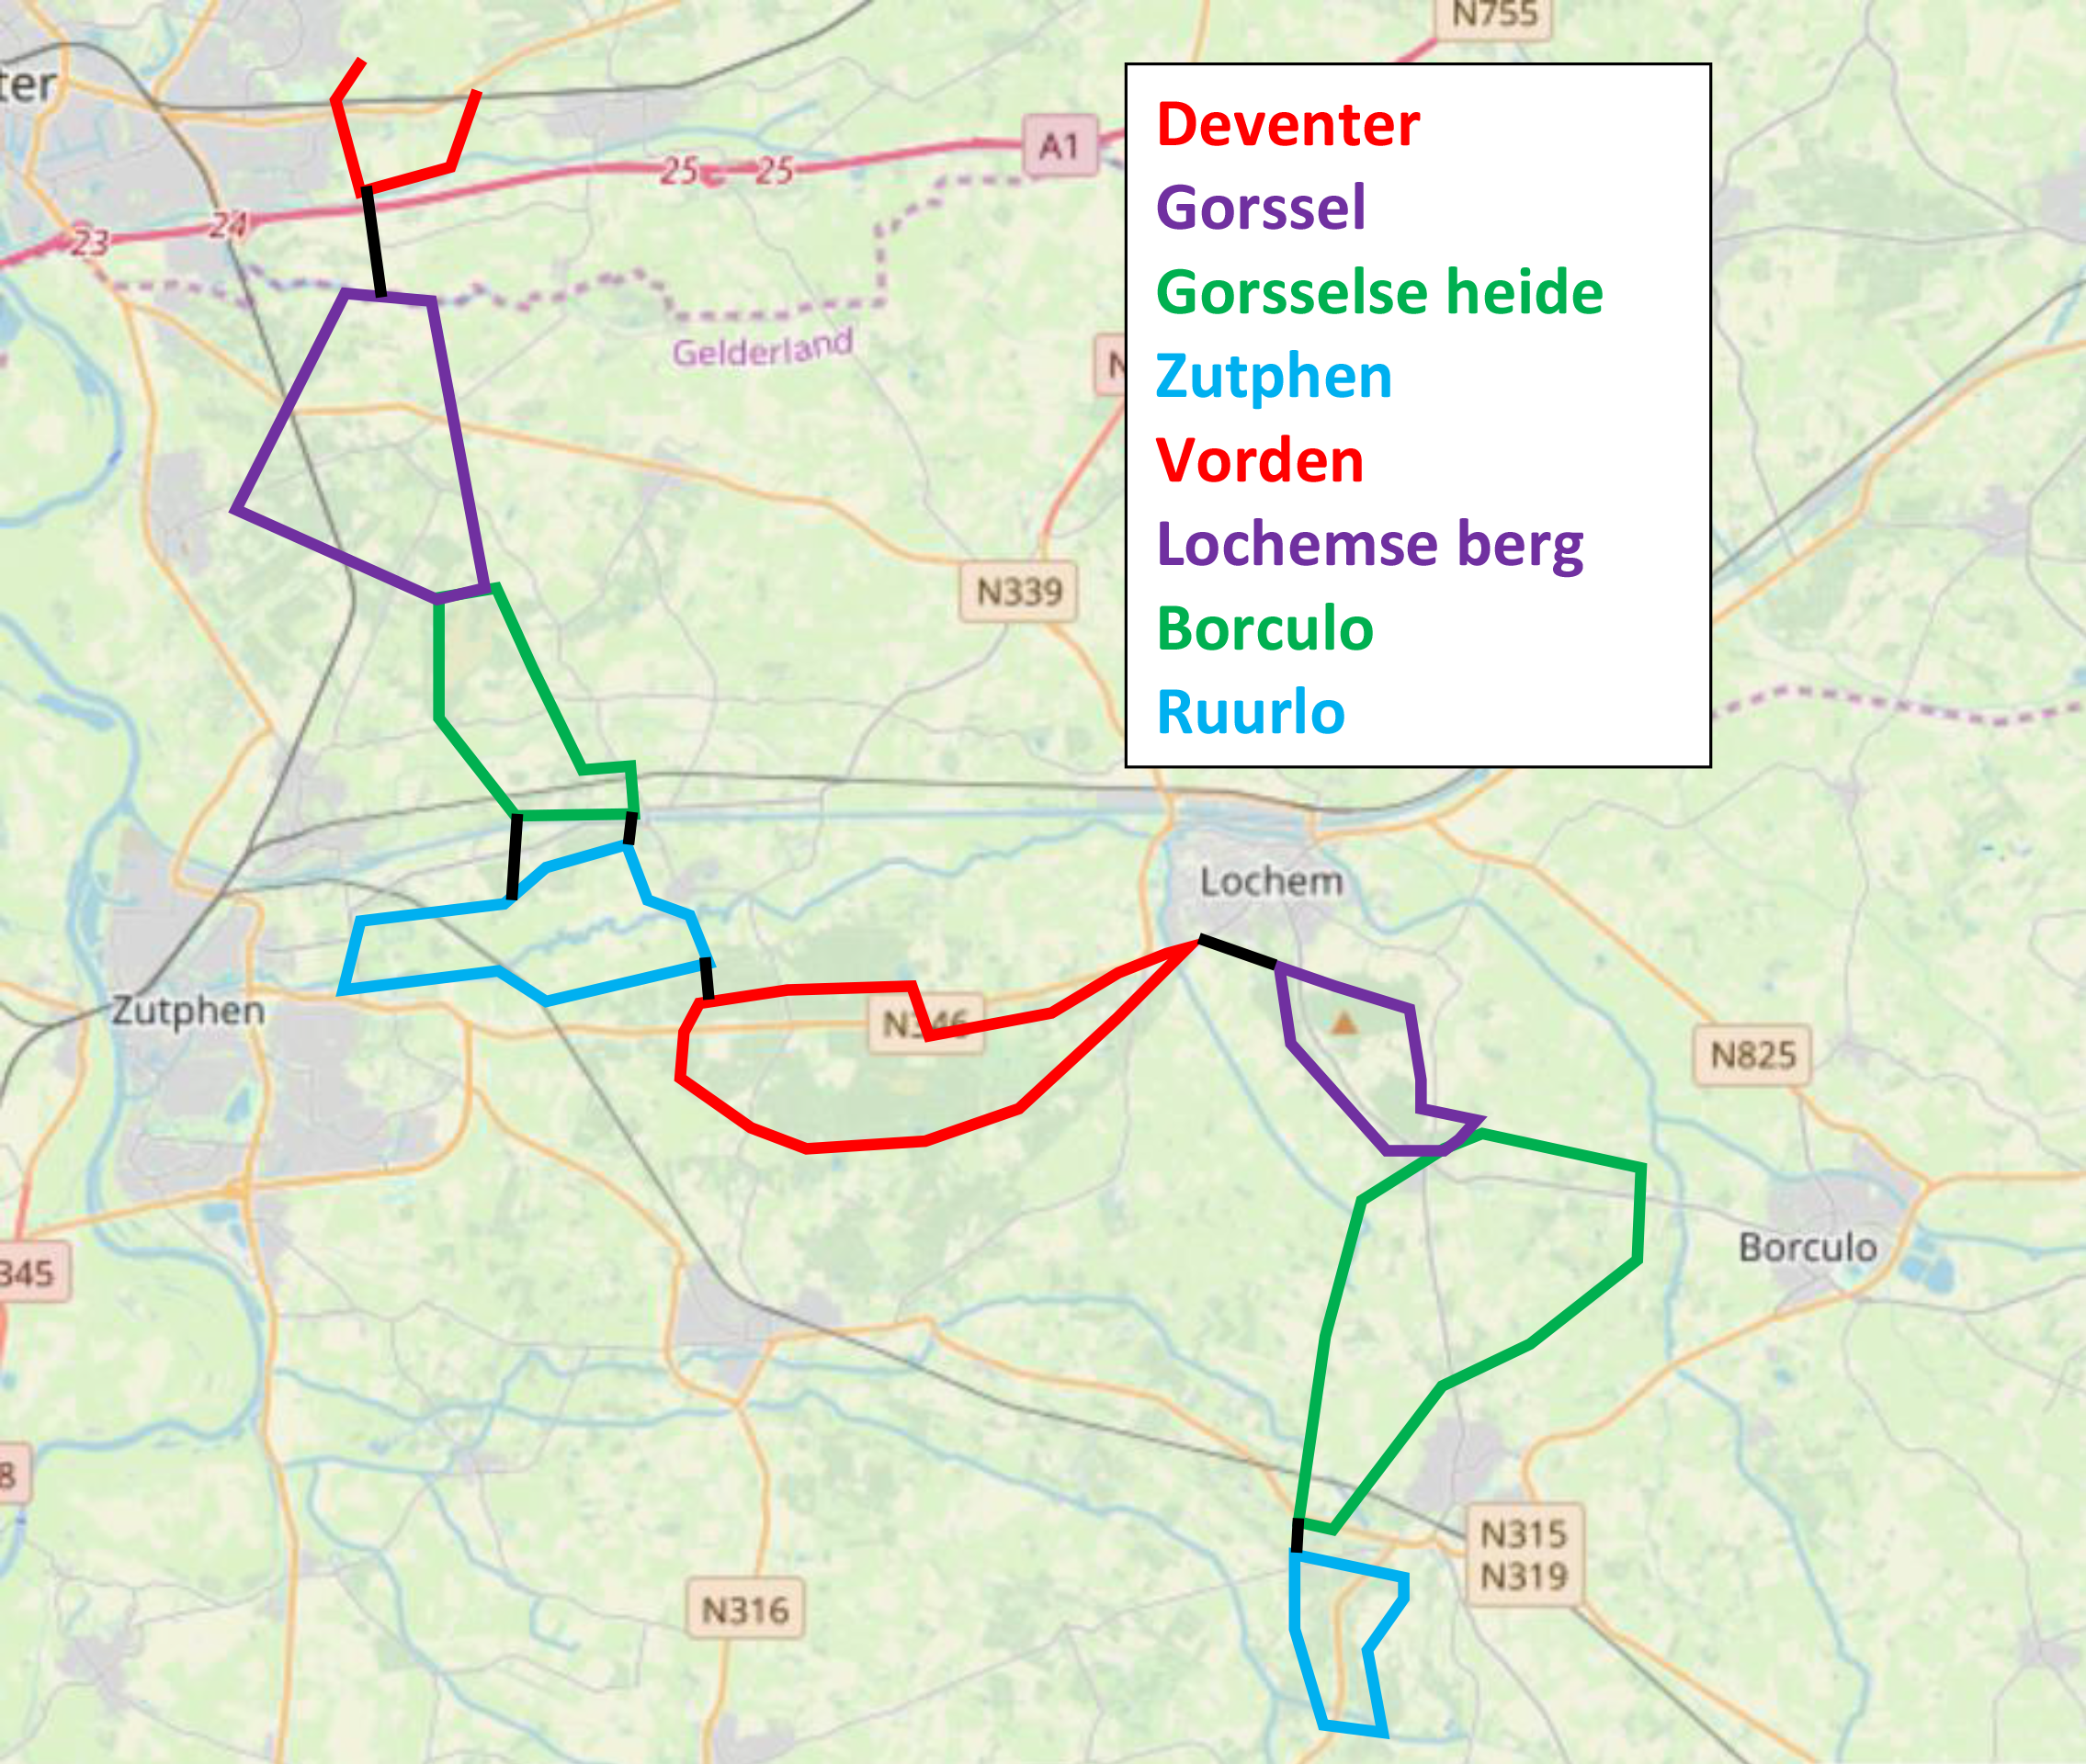 Route overzicht Achterhoek